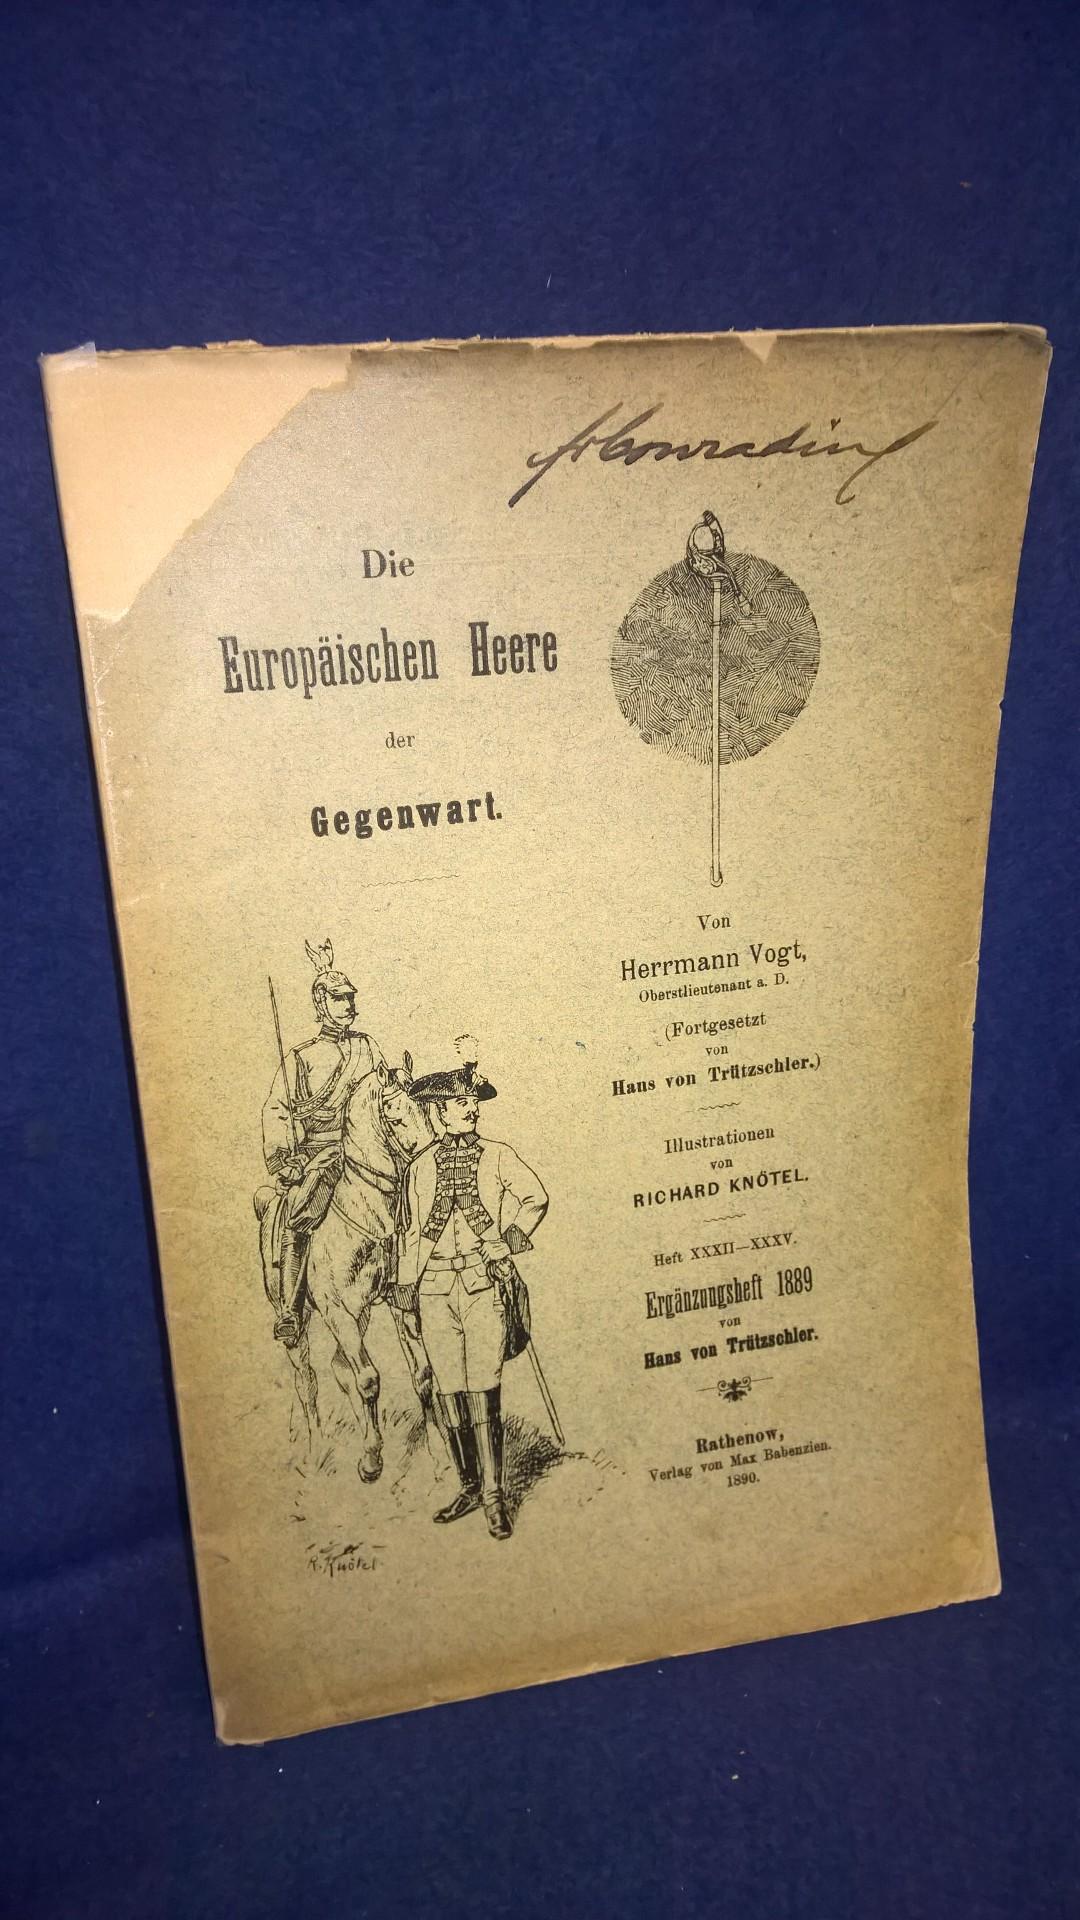 Die Europäischen Heere der Gegenwart. Heft XXXII-XXXV. Ergänzungsheft 1889.